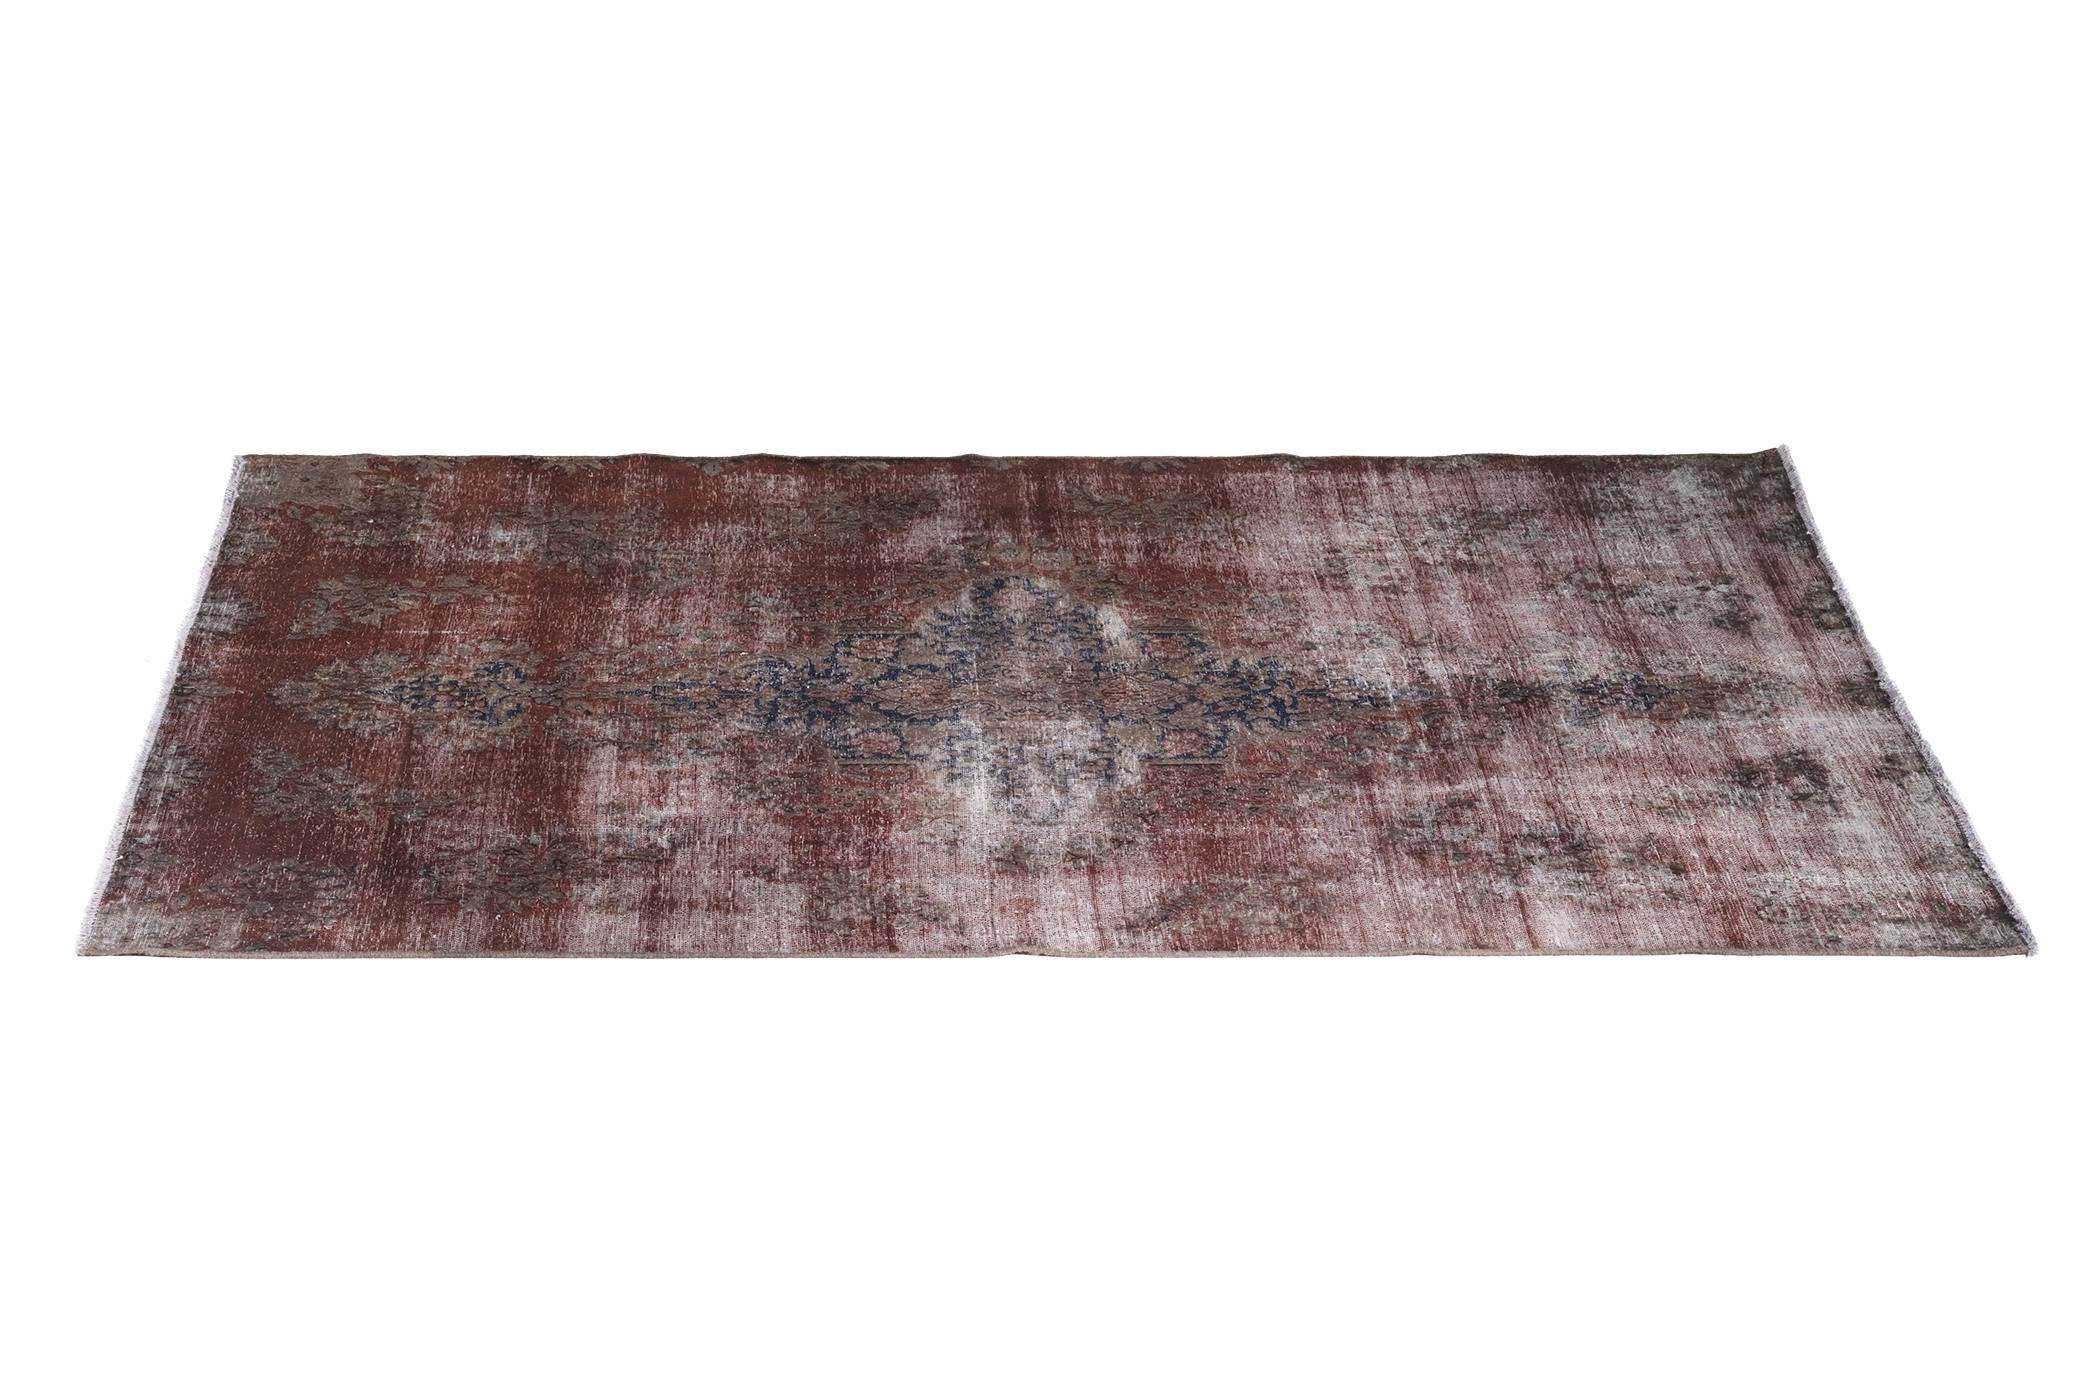 Röd vintagematta med behandlad, solblekt yta och med handgjorda mönster, 143x246cm.